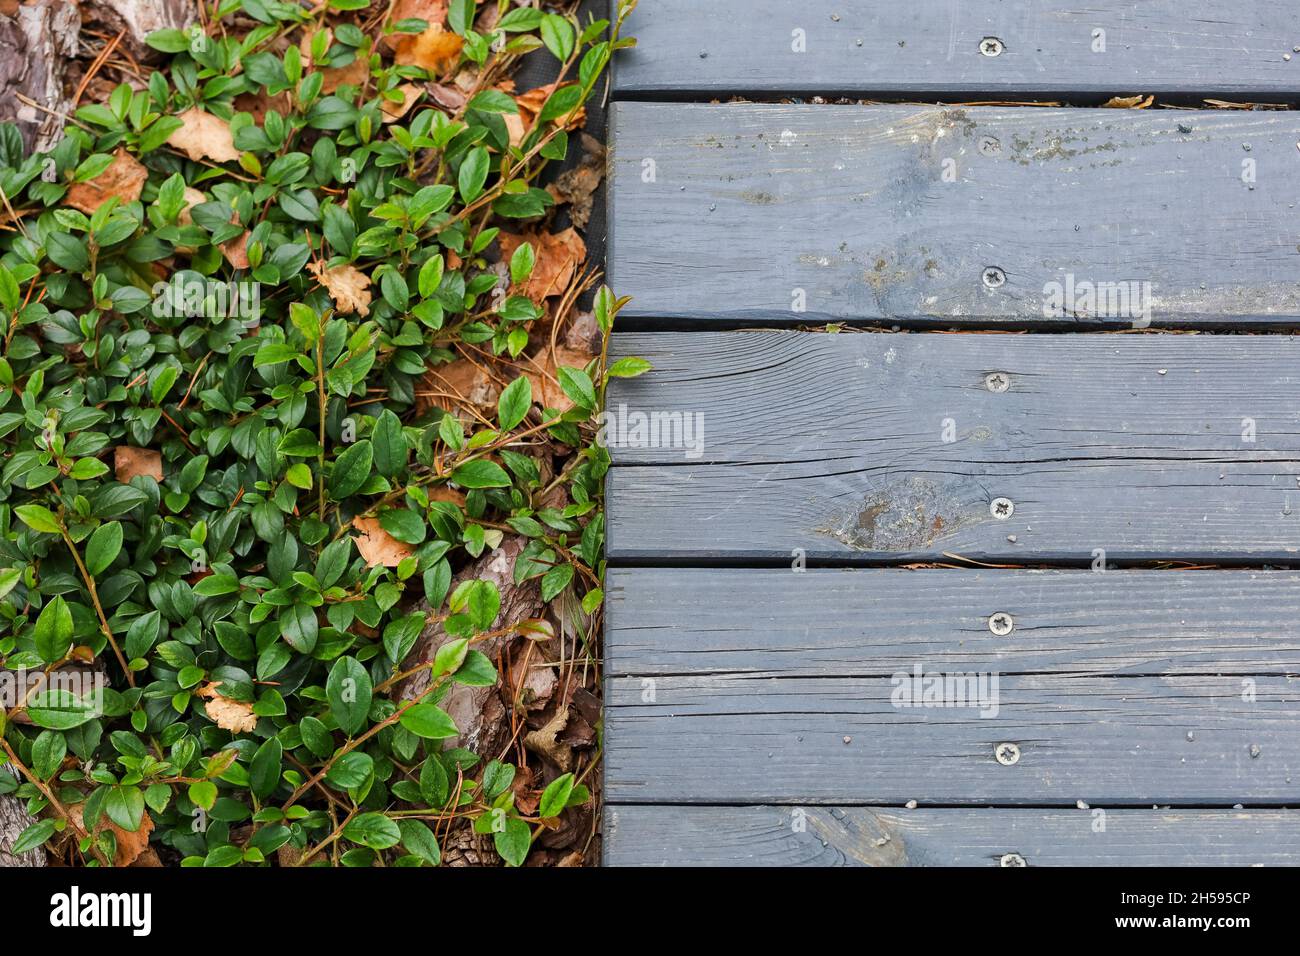 Pavimento in legno vicino alle foglie verdi, aghi di pino, pietre. Foto di alta qualità Foto Stock